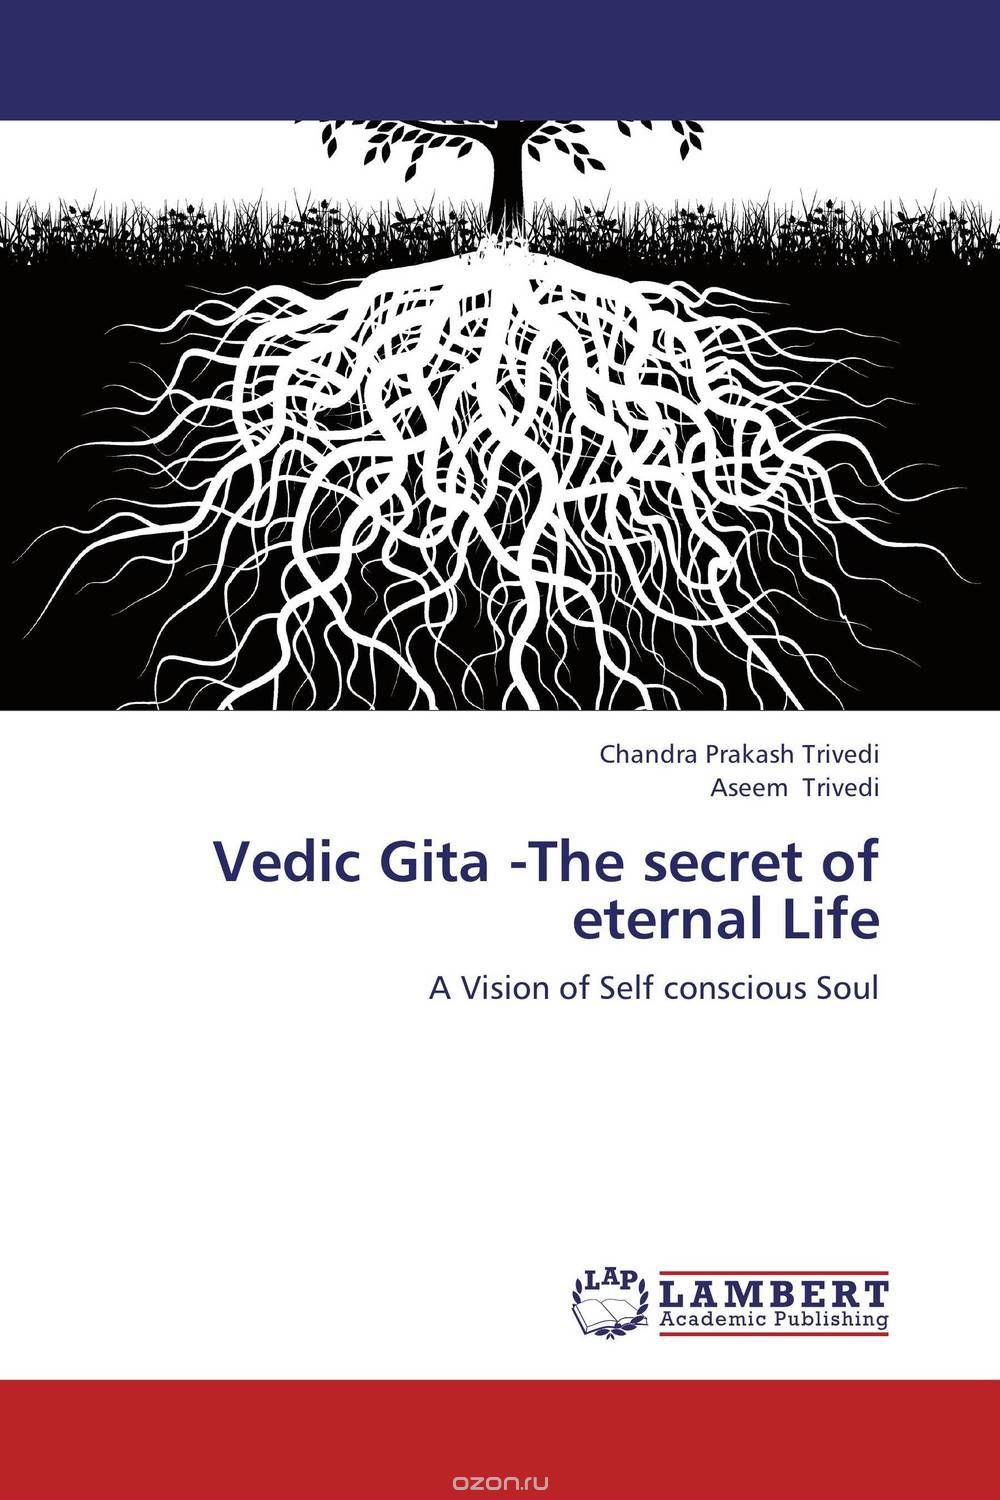 Скачать книгу "Vedic Gita -The secret of eternal Life"